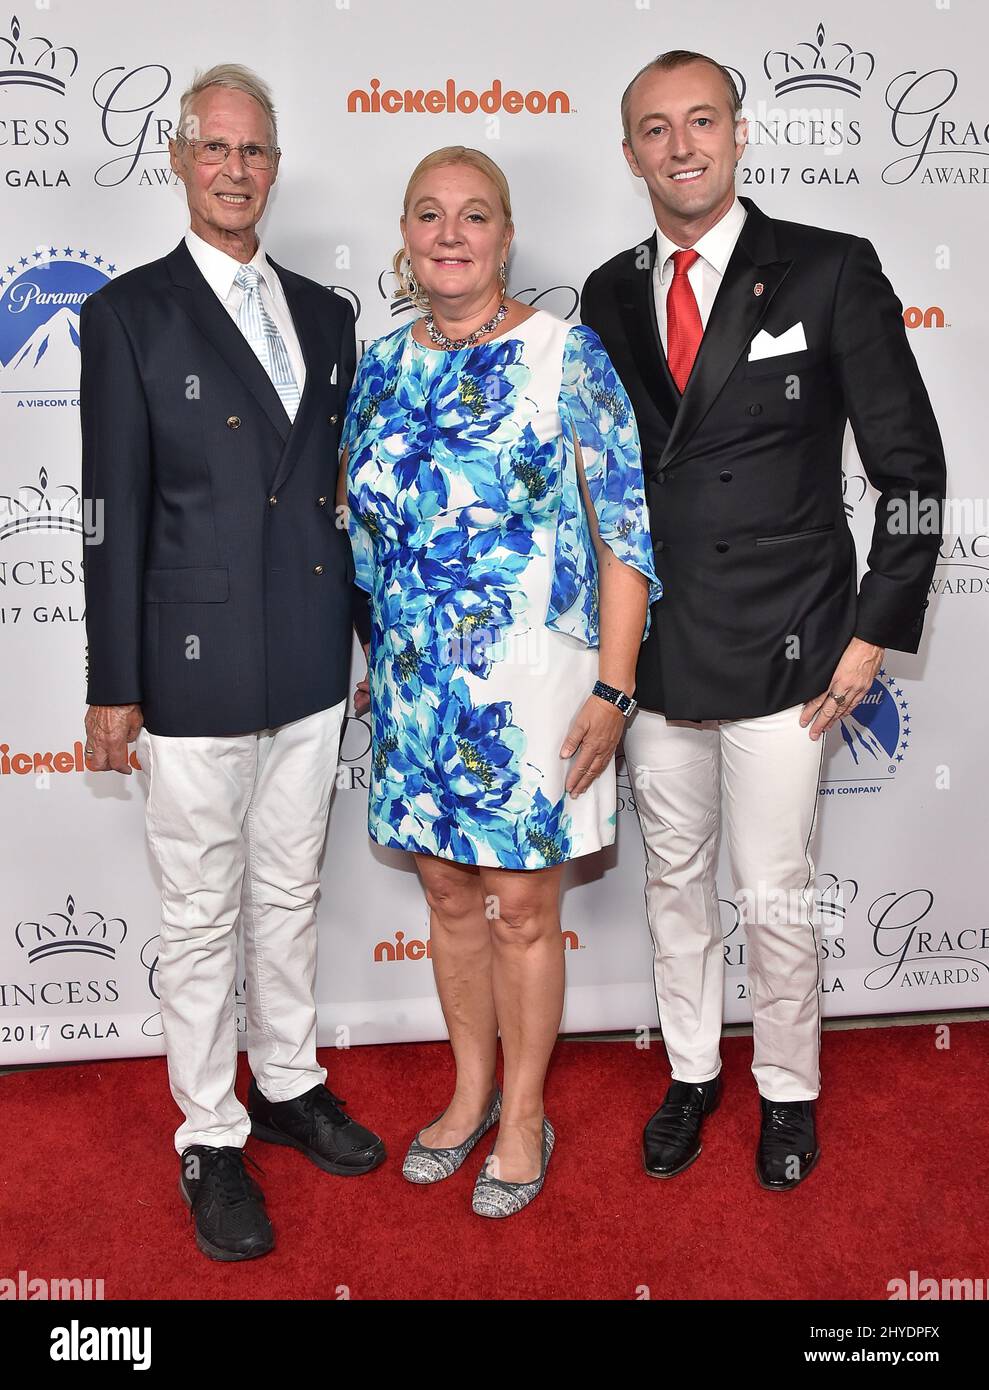 Le Prince MarioMax, le Prince Waldemar et la princesse Antonia Schaumburg participent à l'événement de lancement du gala des prix Princess Grace 2017 qui a eu lieu aux studios Paramount Banque D'Images